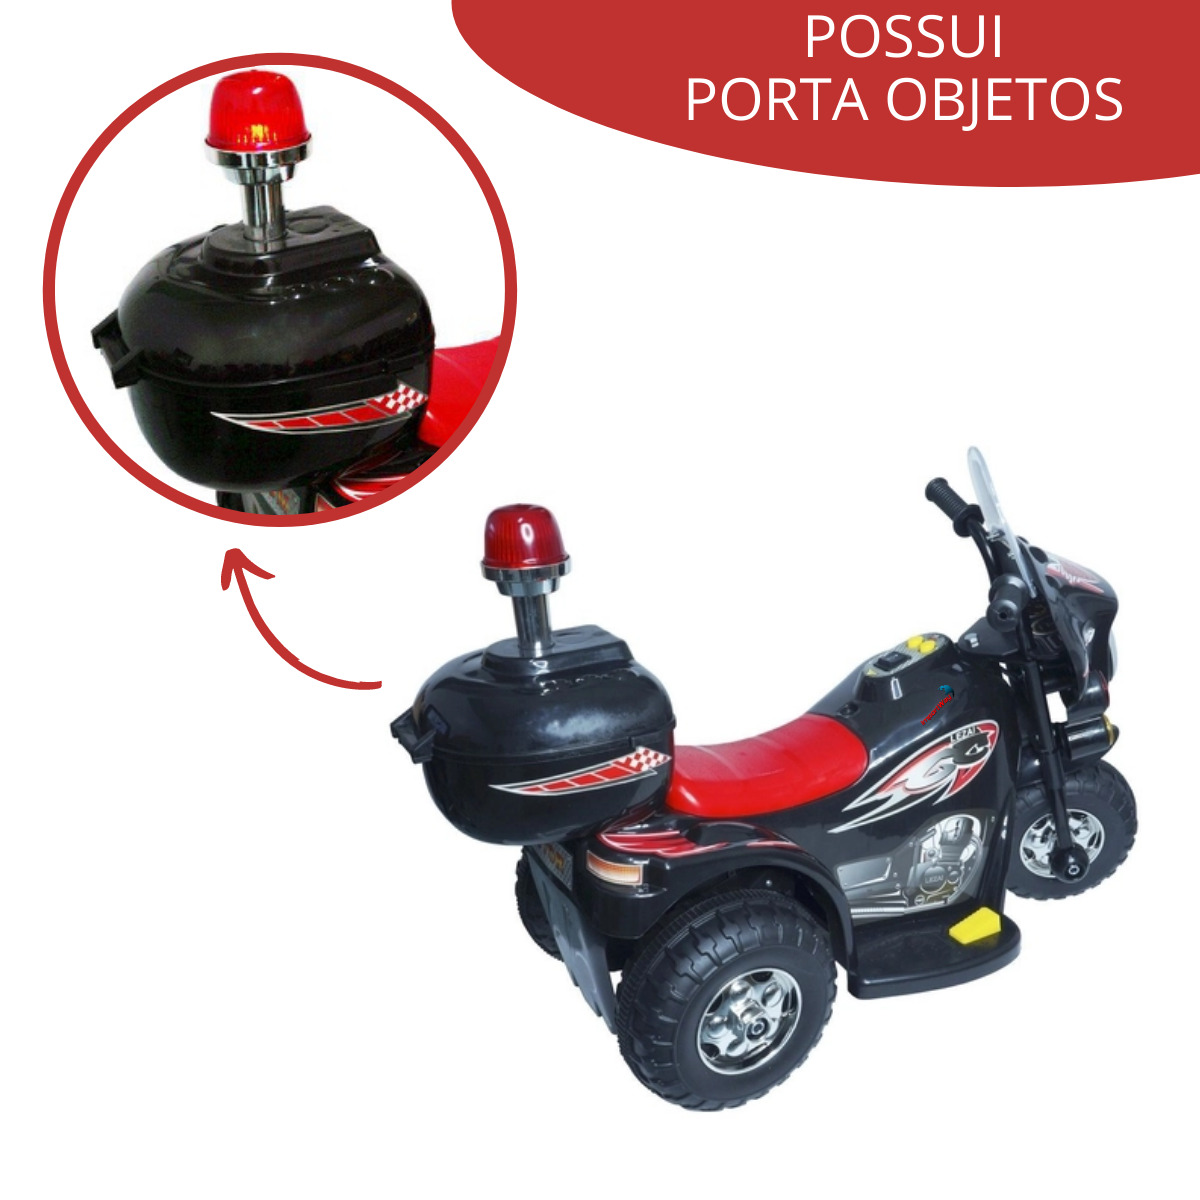 Brinquedo Mini Moto Eletrica Triciclo Motinha Infantil - Zippy